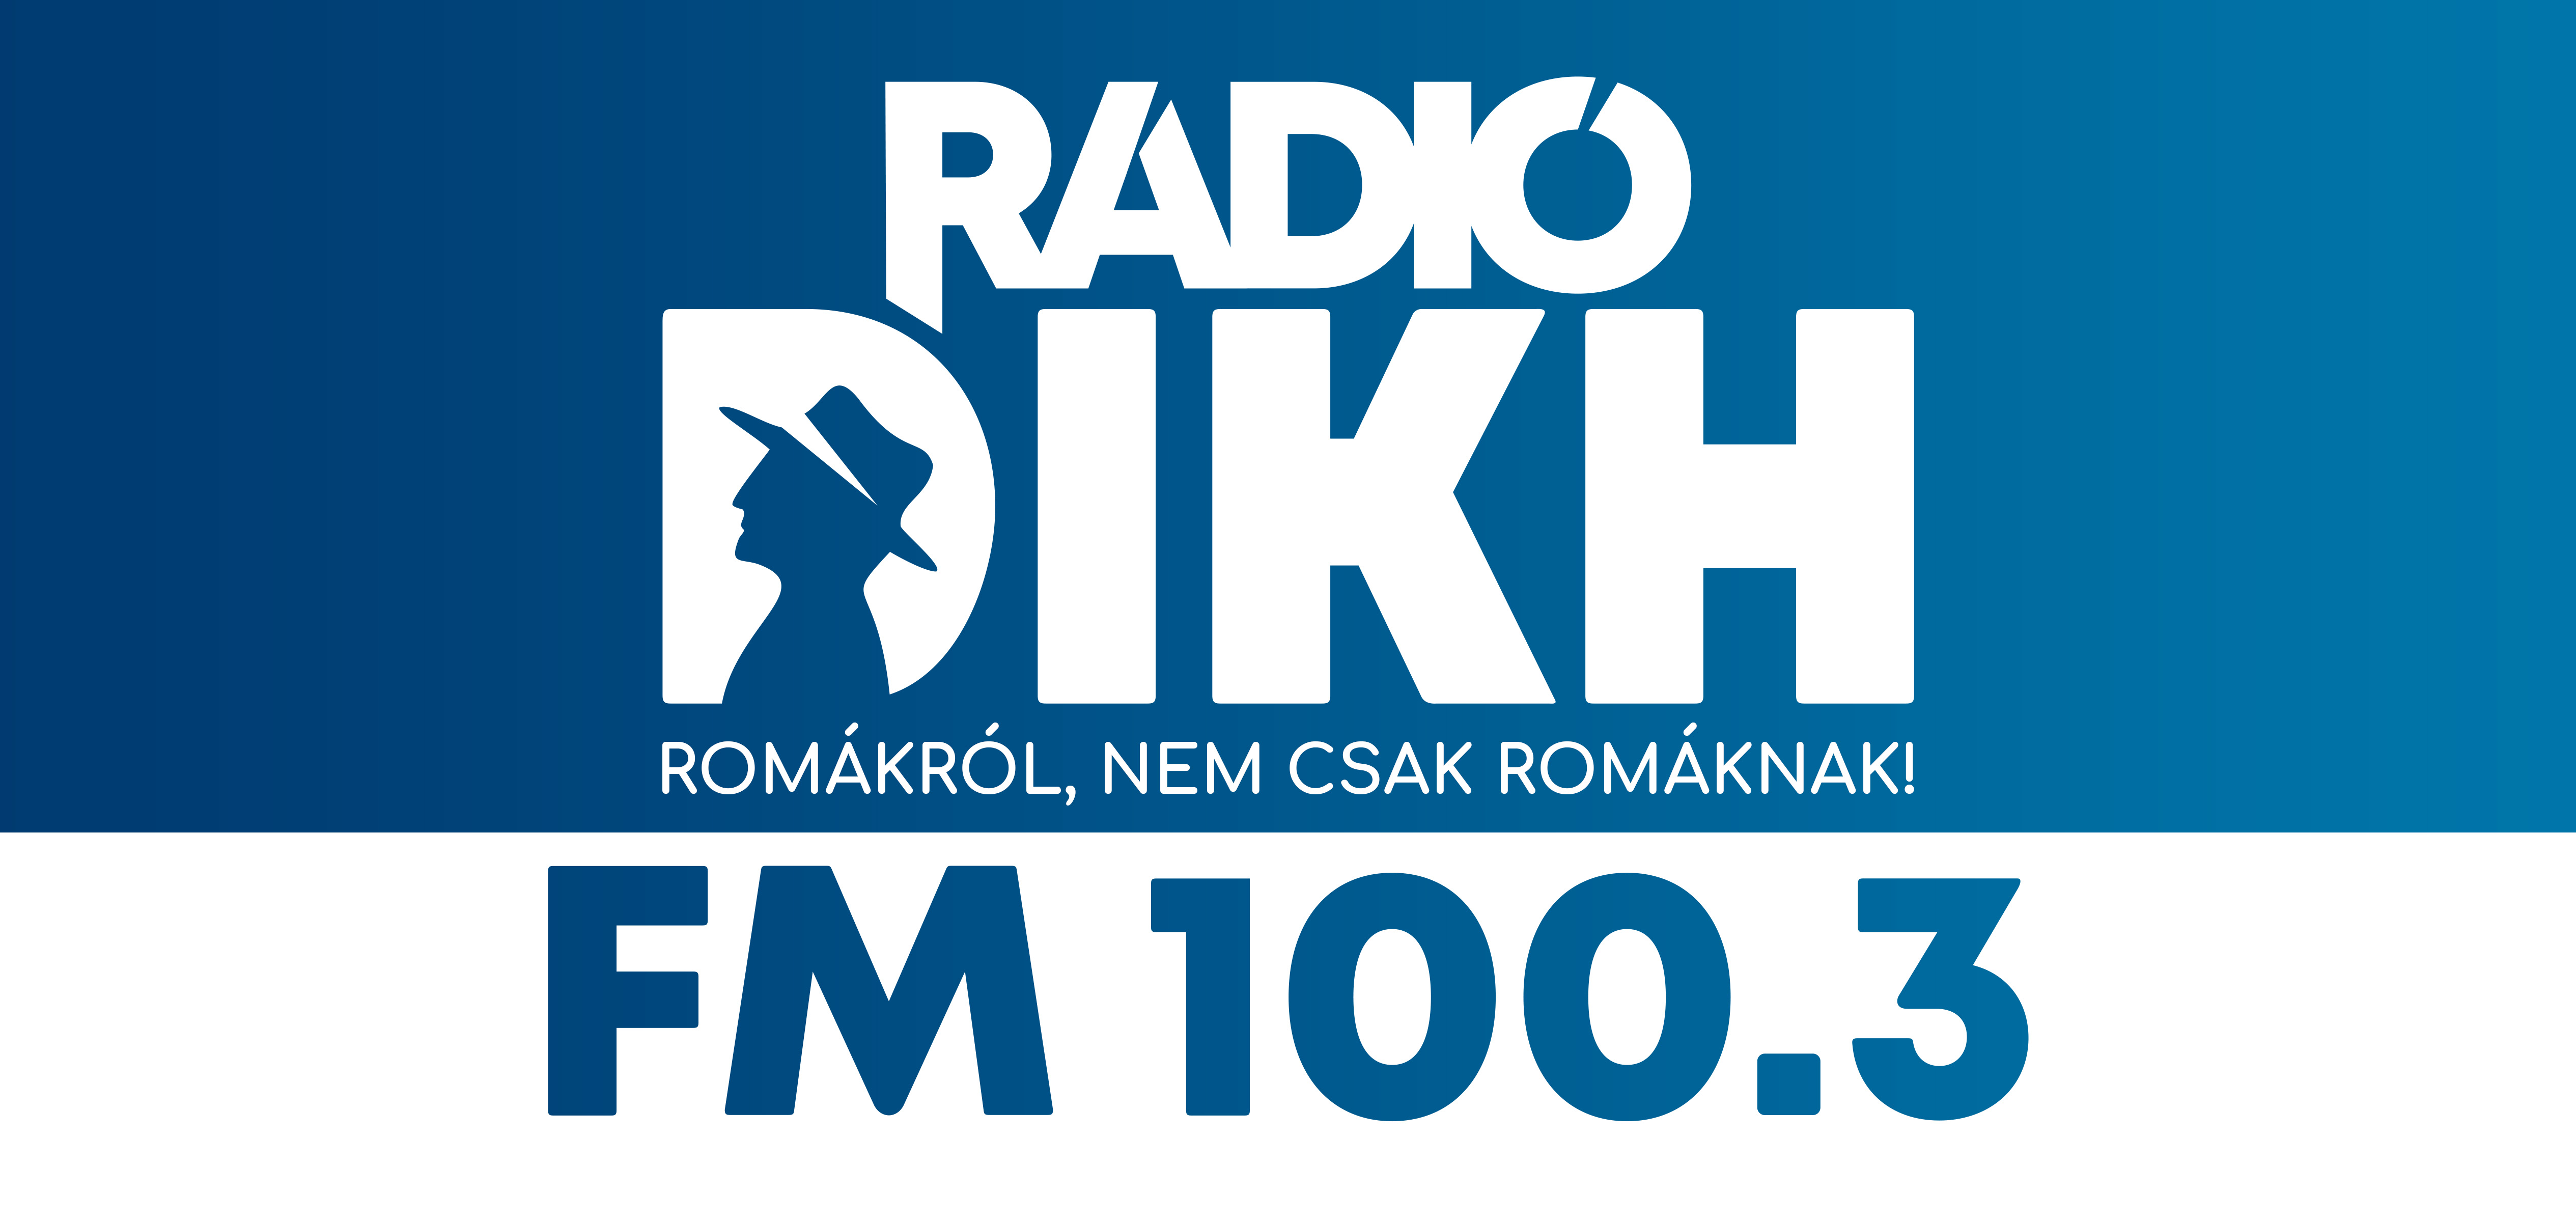 Megkezdte működését az egyetlen roma rádió, a Rádió Dikh